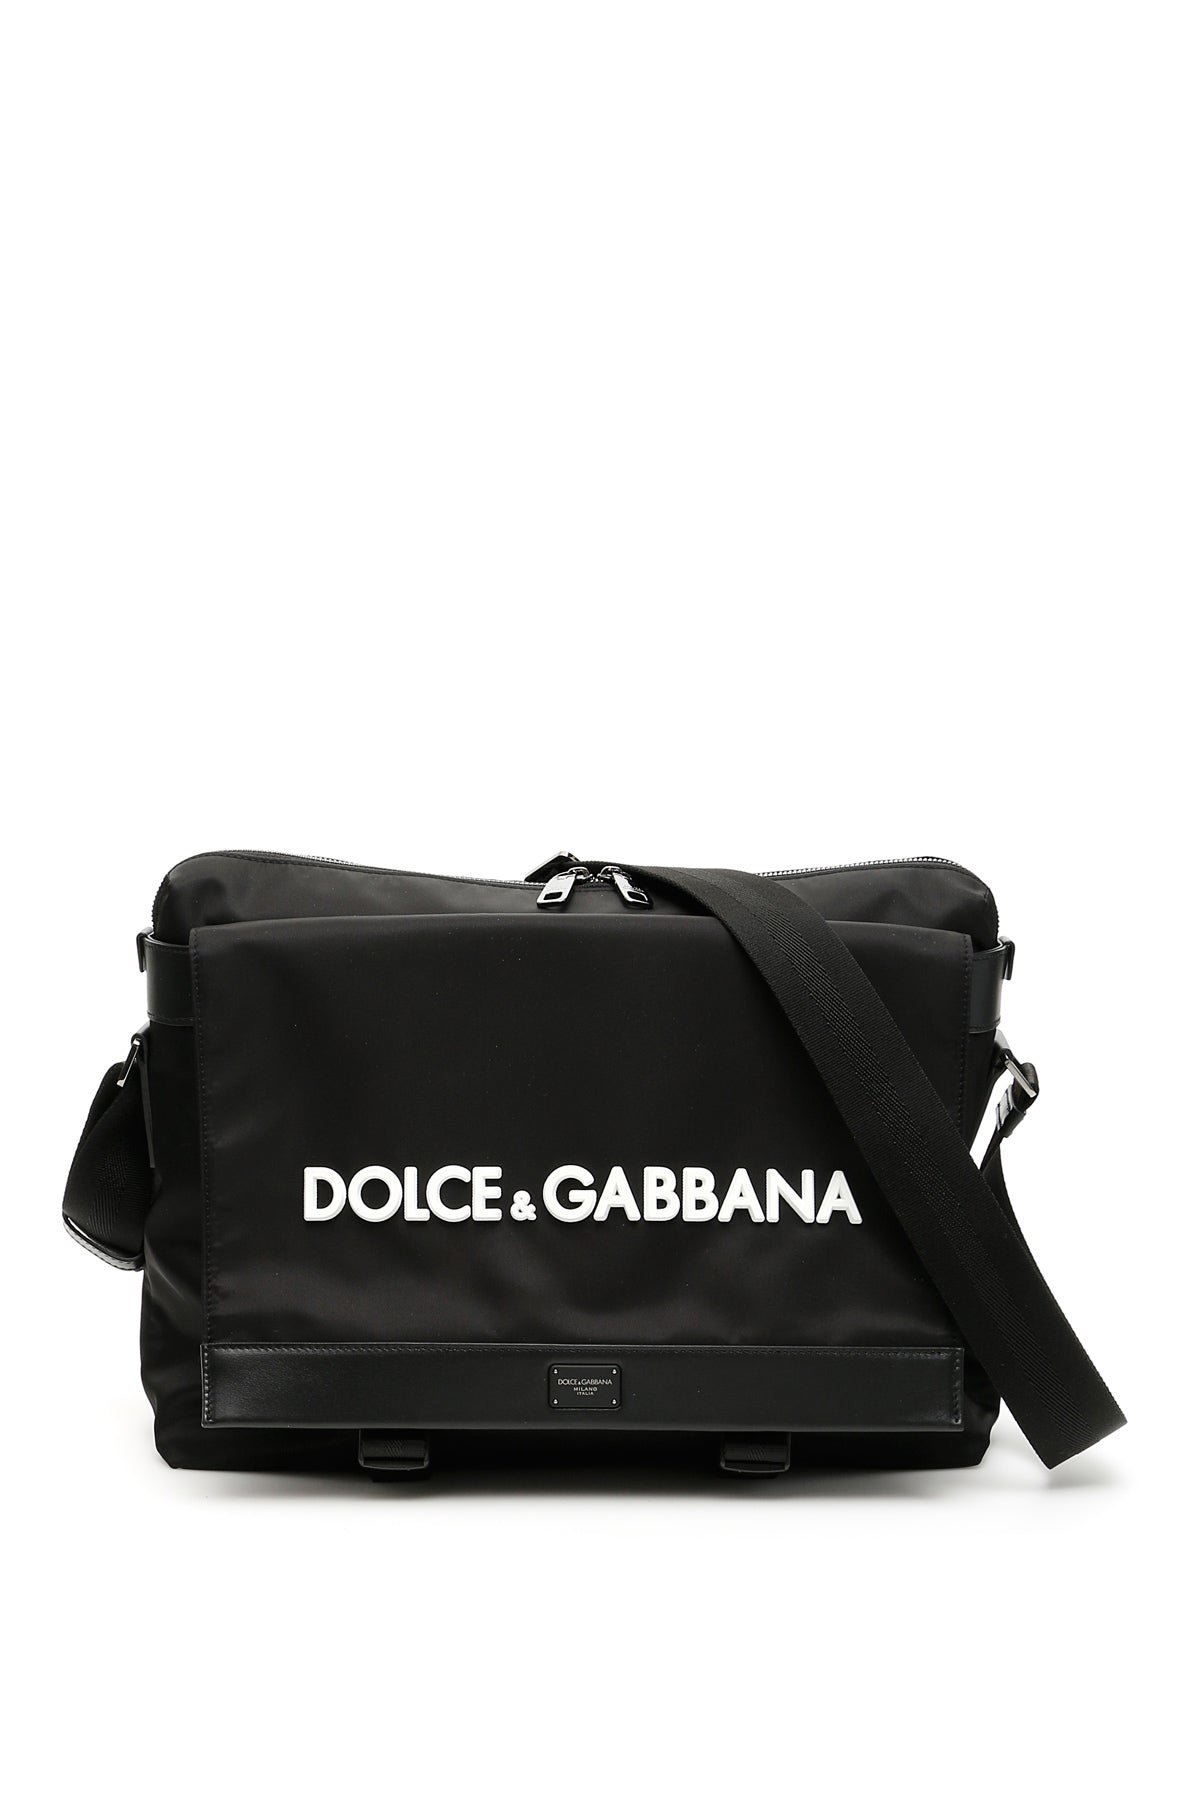 DOLCE & GABBANA DOLCE & GABBANA LOGO MESSENGER BAG